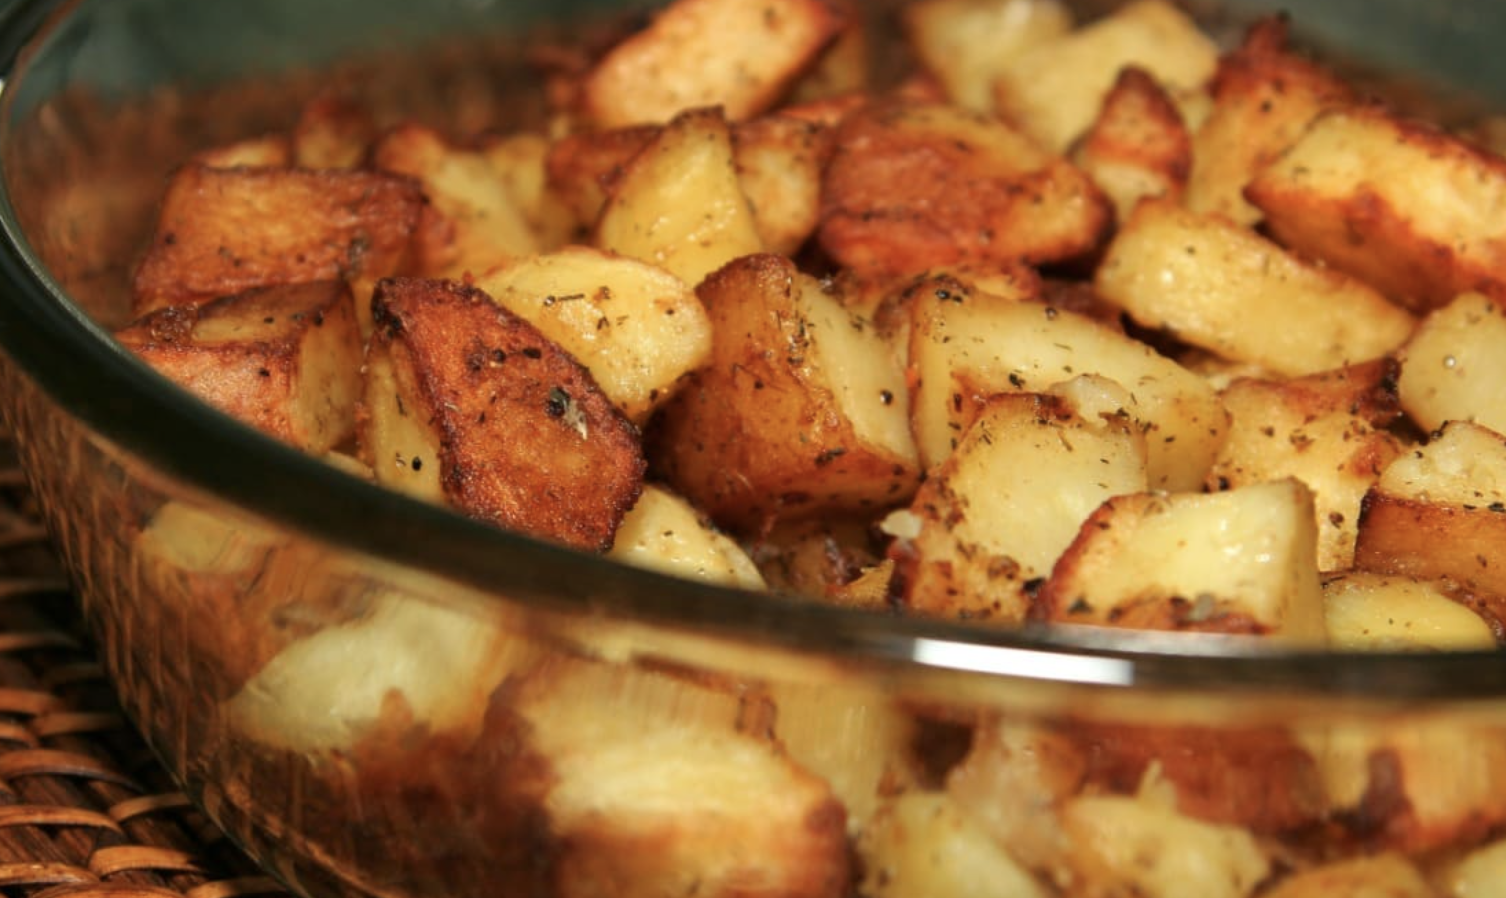 patate-al-forno-che-sembrano-fritte:-svelato-il-trucco-per-farle-croccanti-e-leggere,-ecco-cosa-mettere-nel-forno